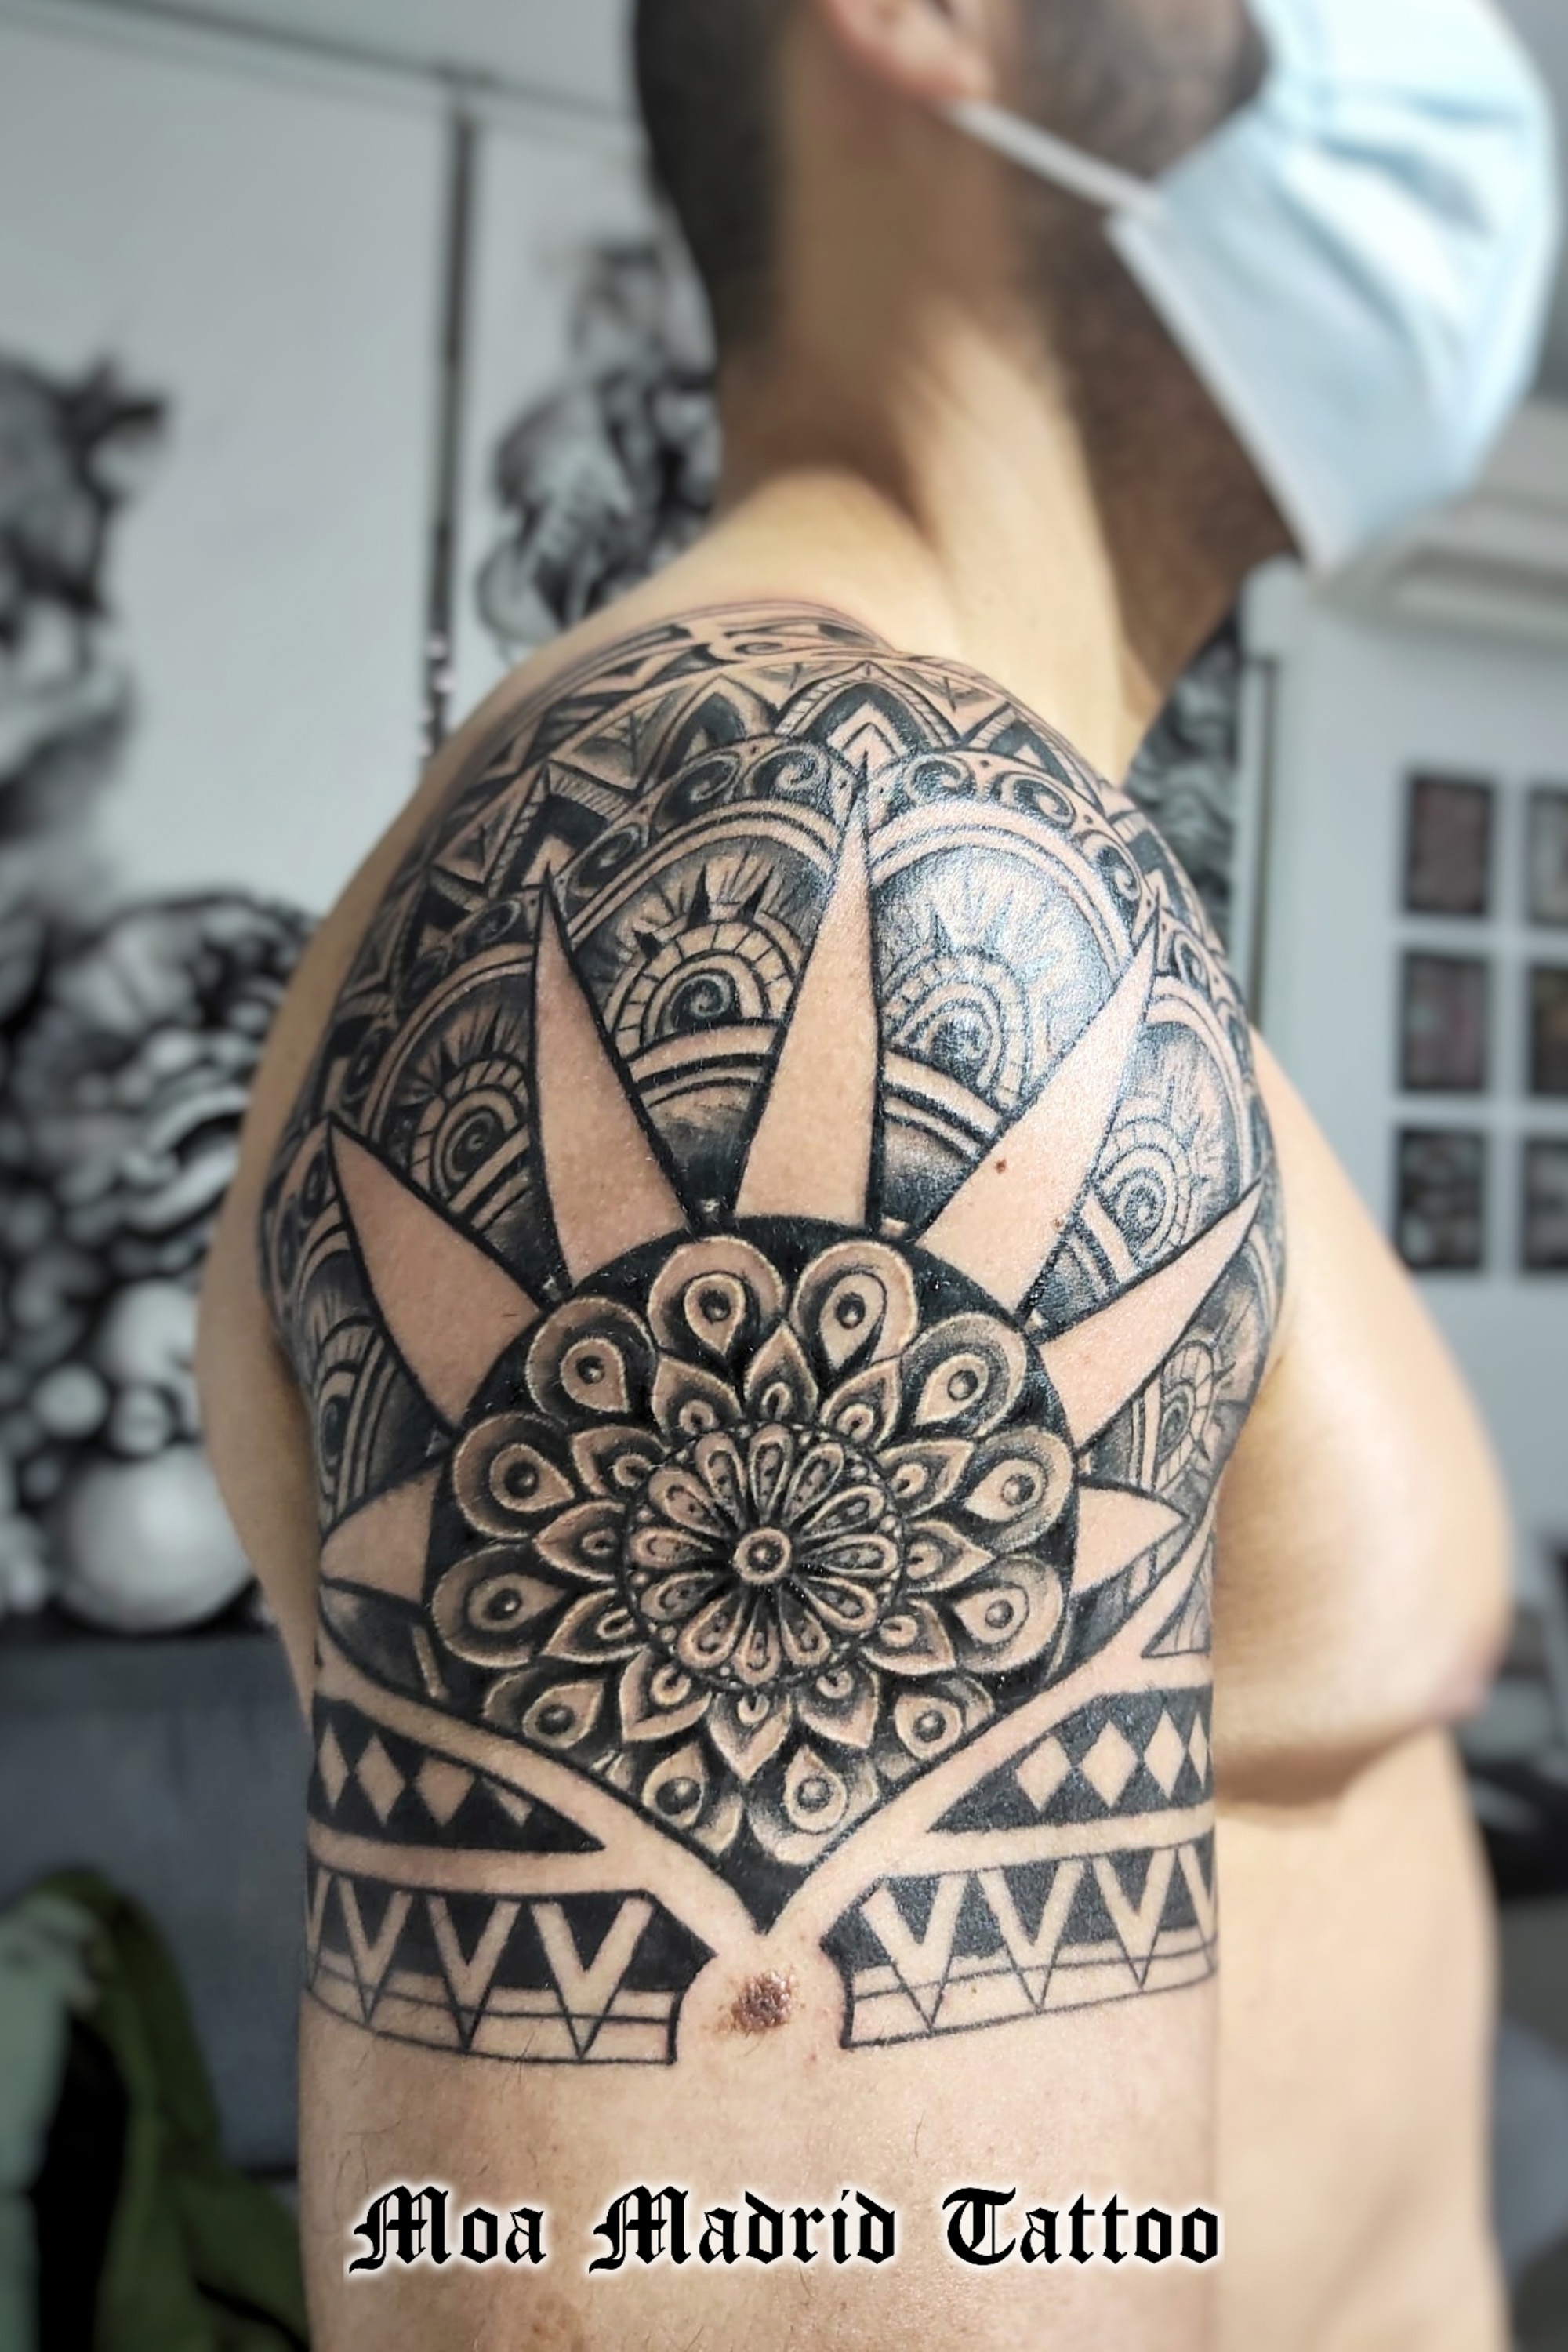 Un gran mandala en el brazo con decoración de estilo maorí: nuevos estilos de tattoos